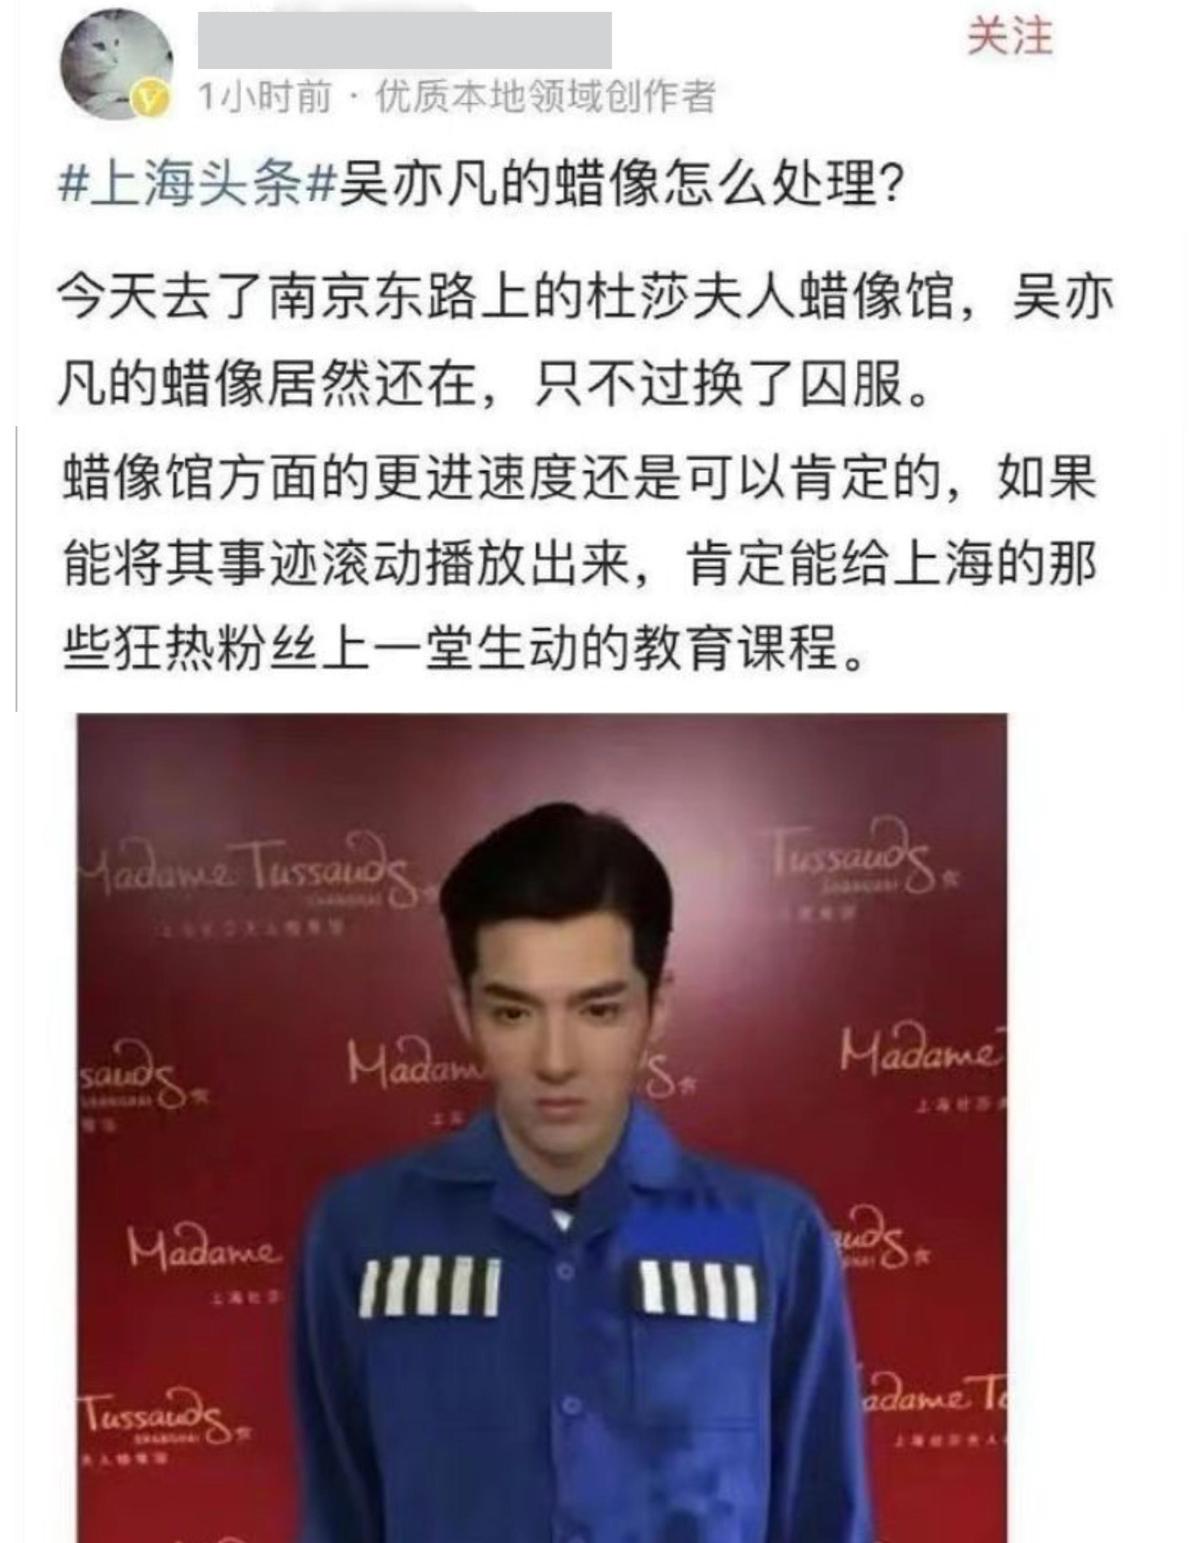 網友發文爆料自己去了上海杜莎夫人蠟像館，「吳亦凡的蠟像換了囚服。」（翻攝自微博）